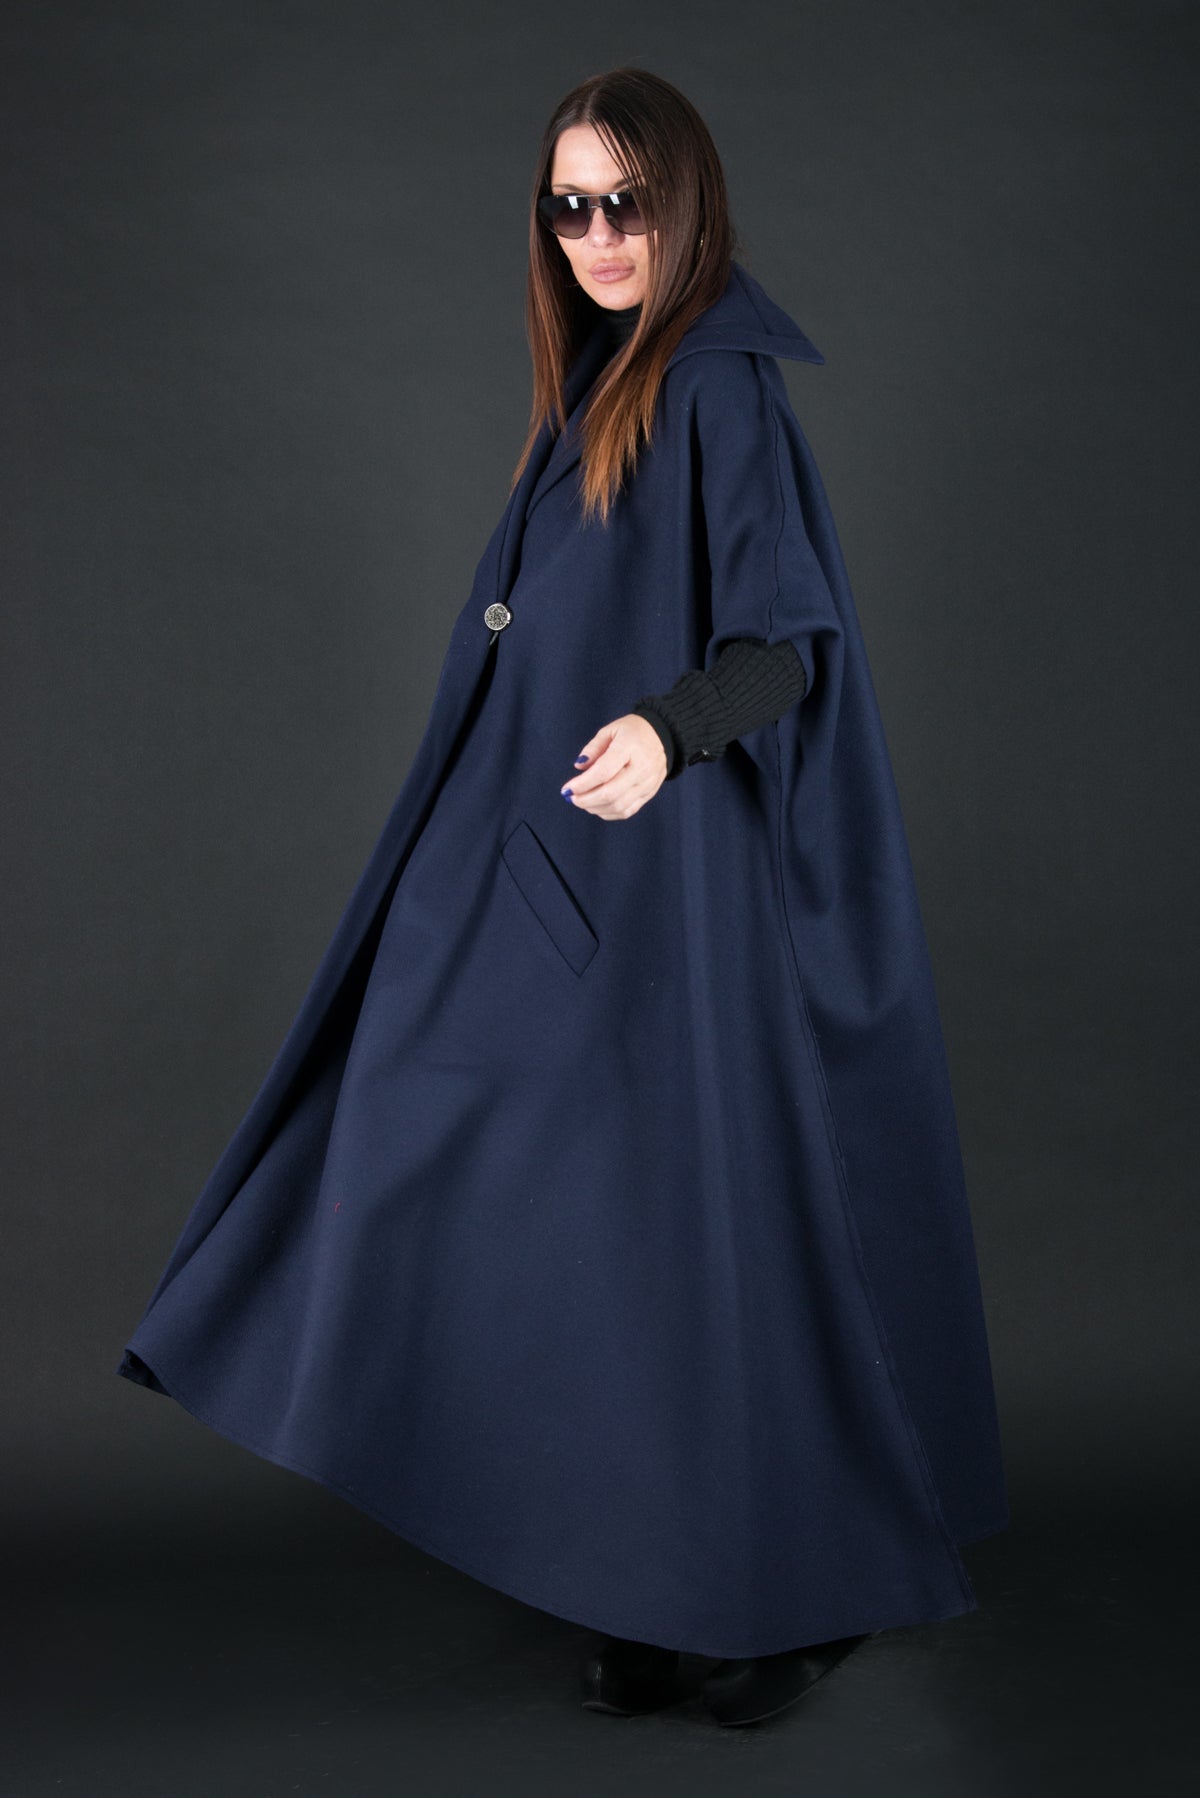 Sleeveless Blue Cashmere Sleeveless Wool Coat, Cardigans & Vests